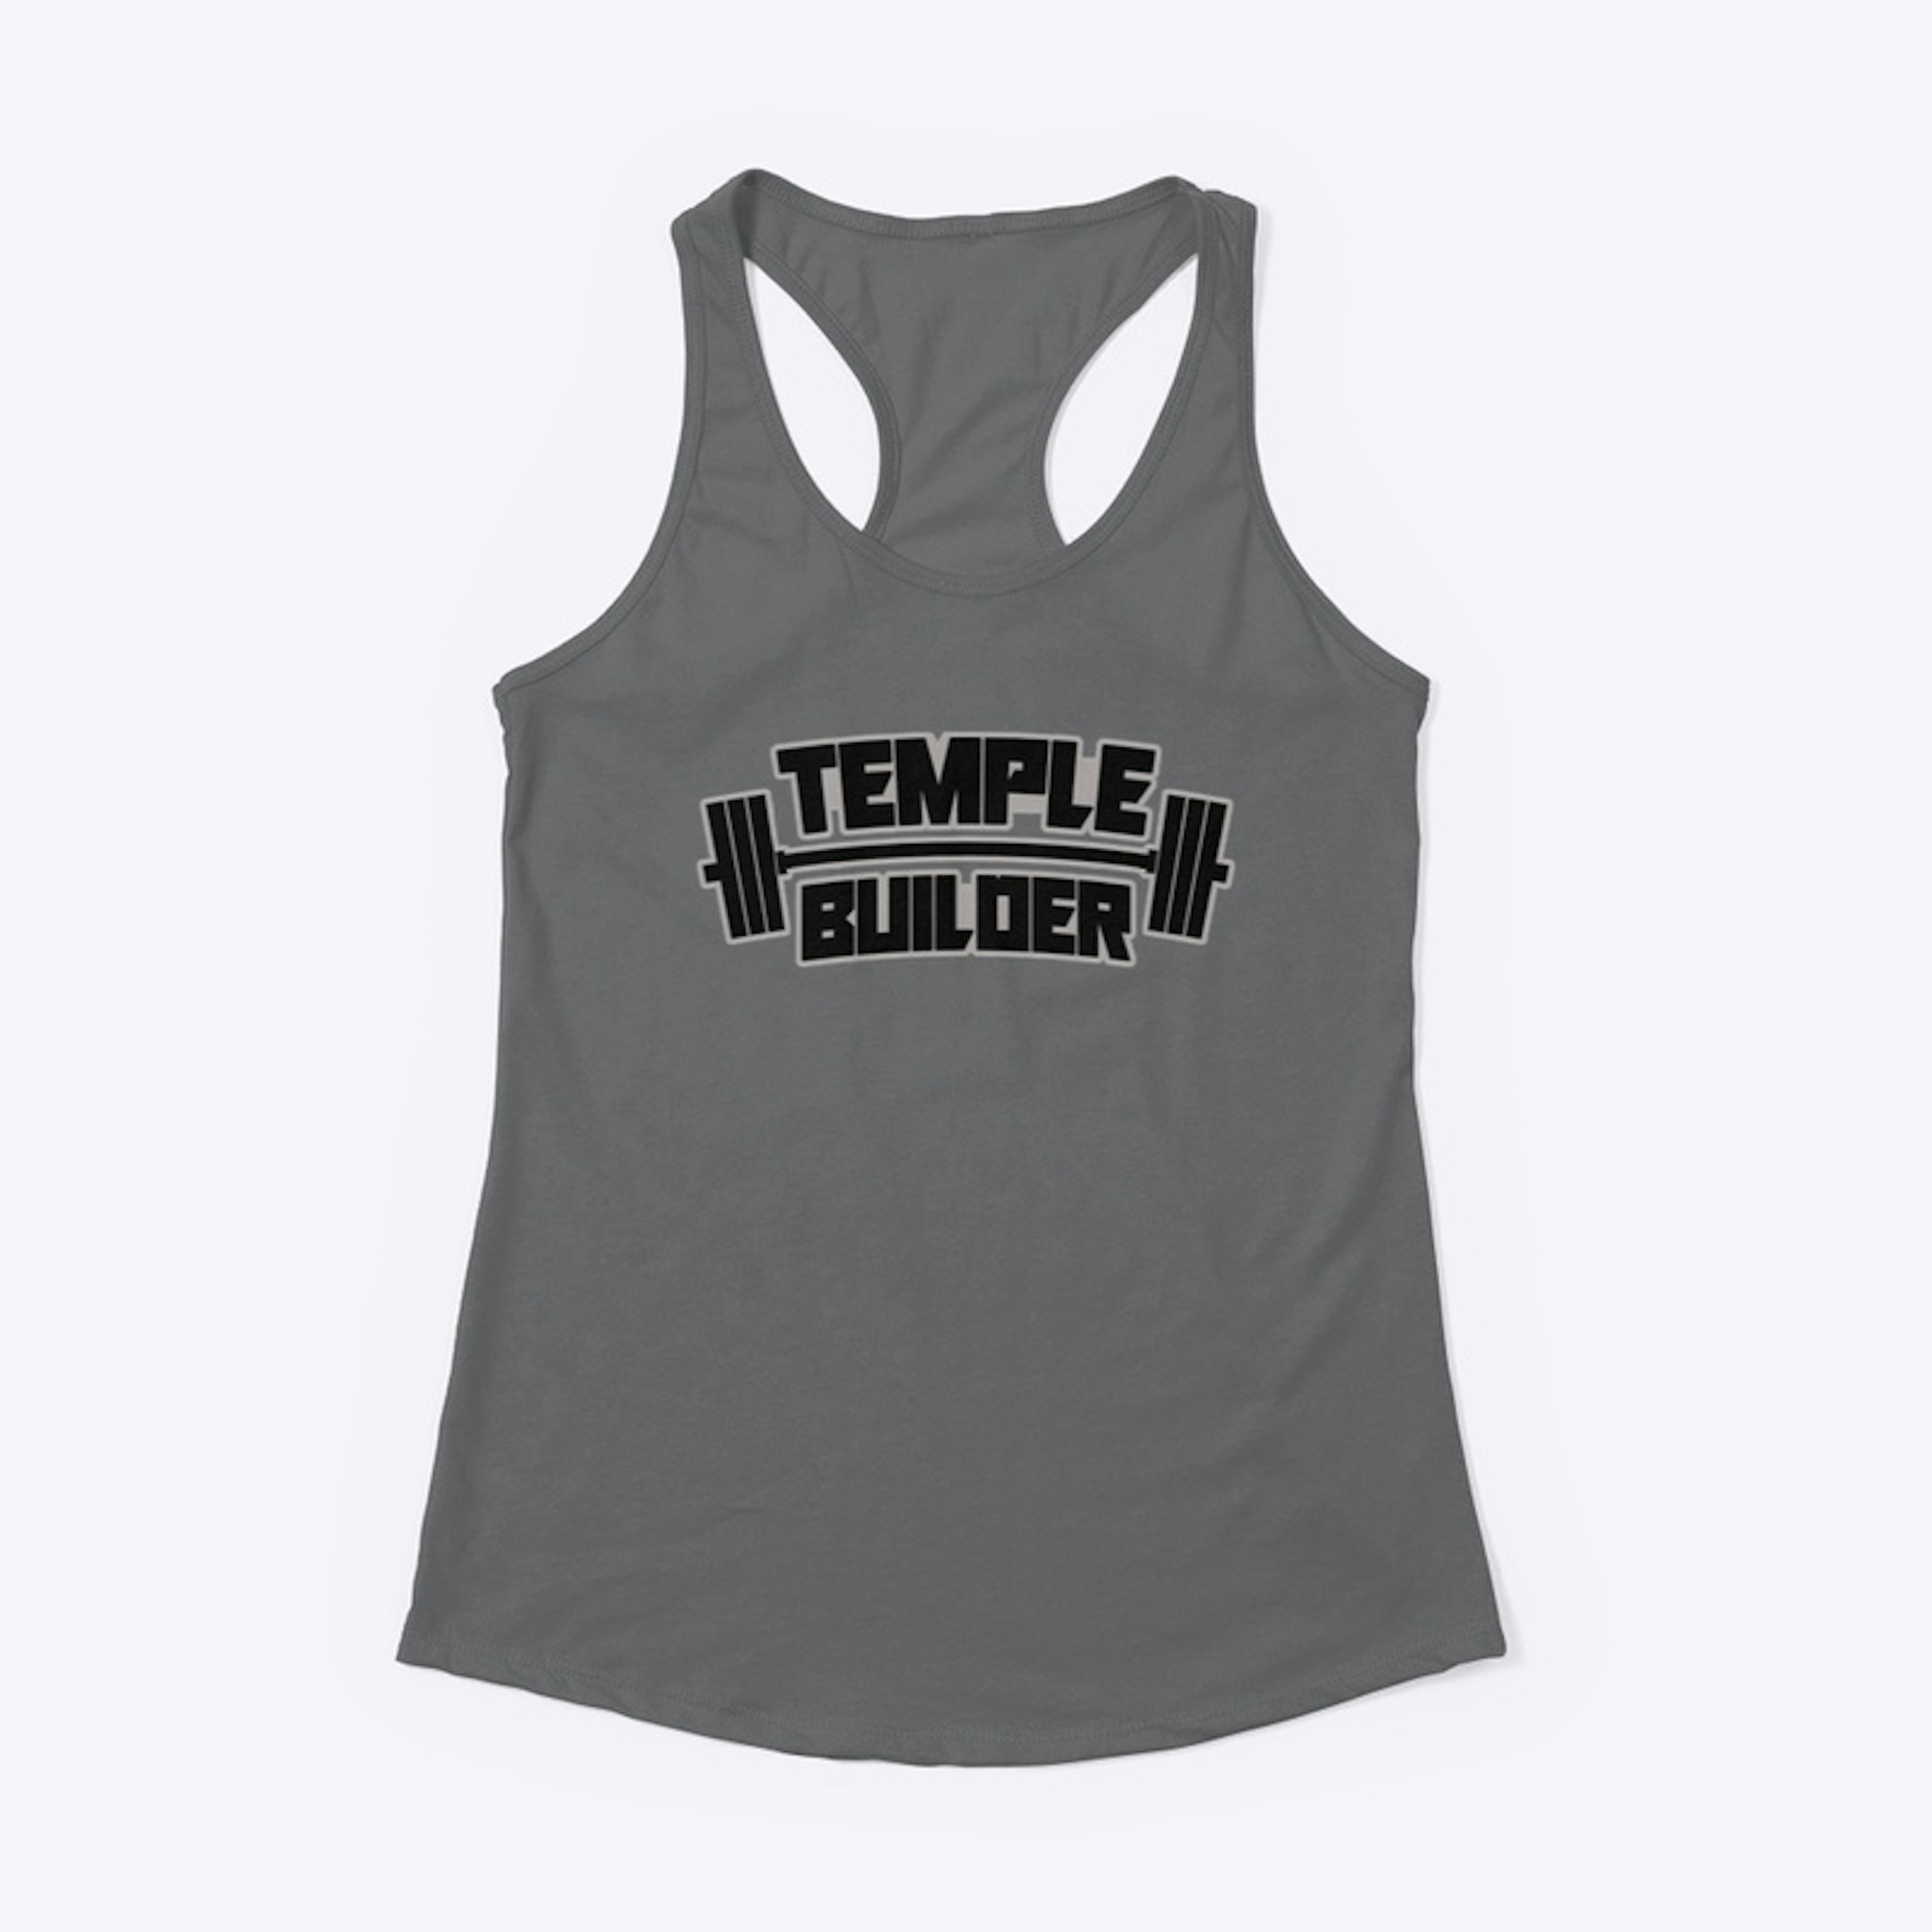 Temple Builder Wear